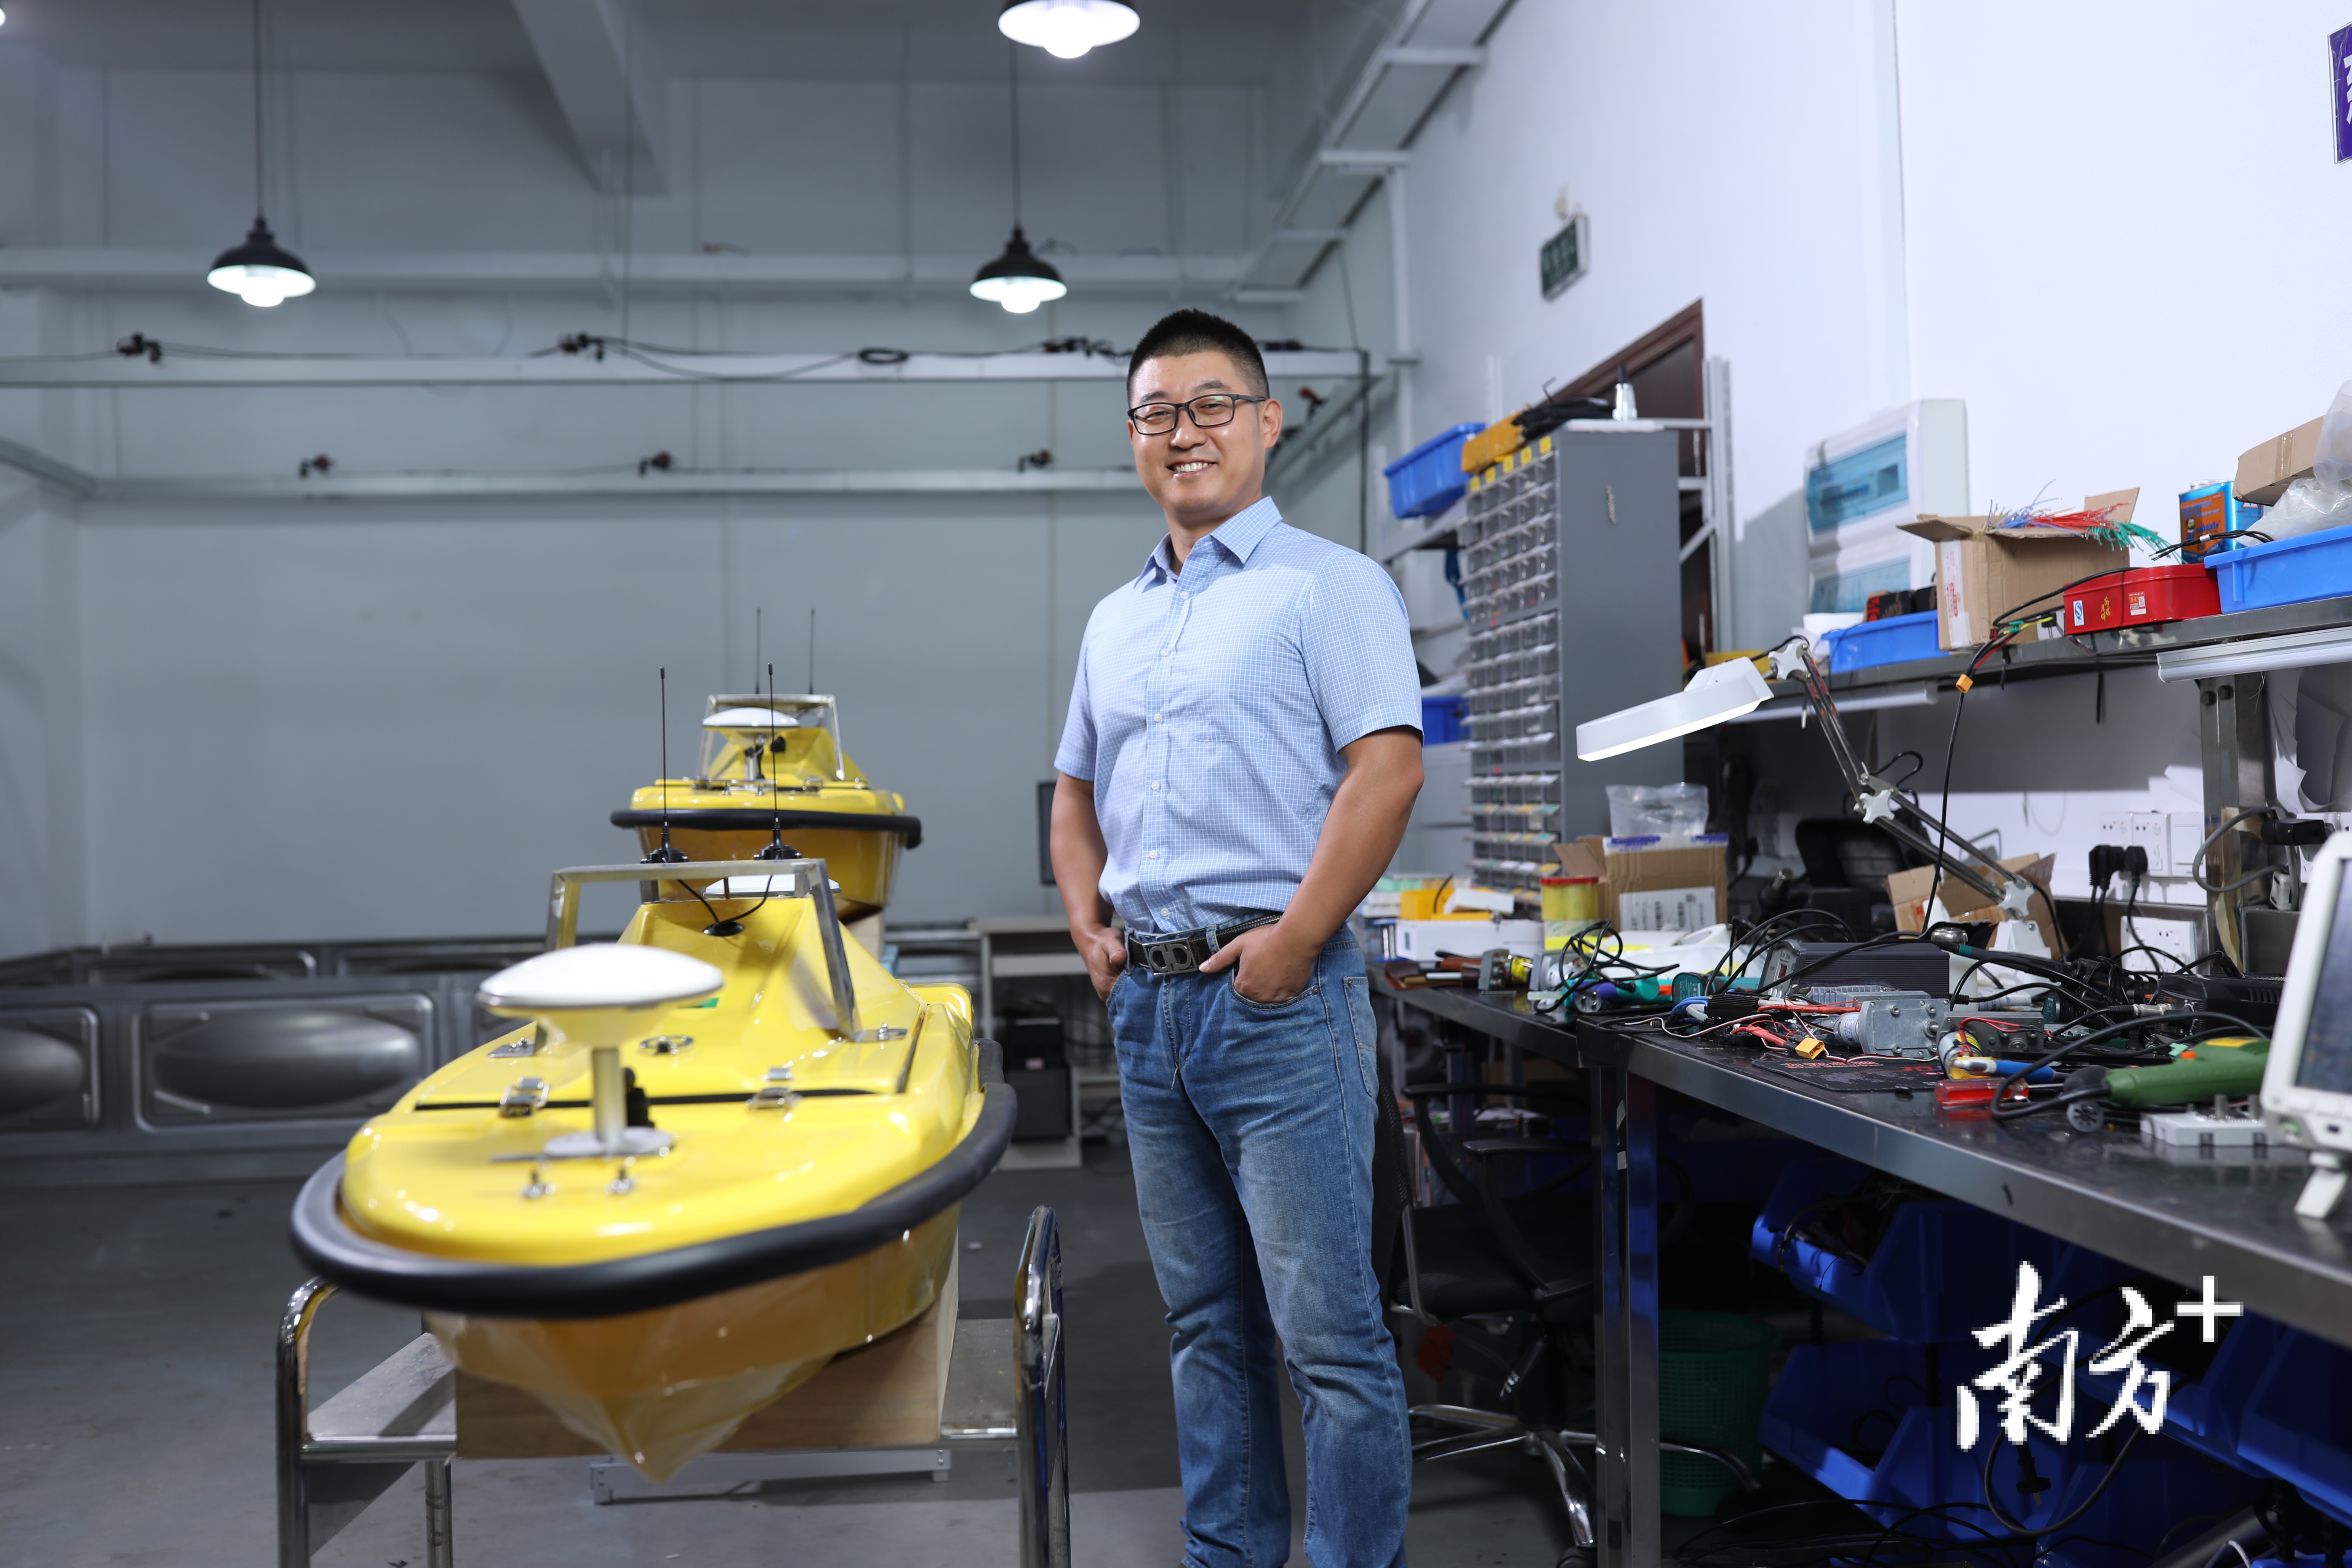 东莞小豚智能技术有限公司总经理耿涛在展示无人艇产品。